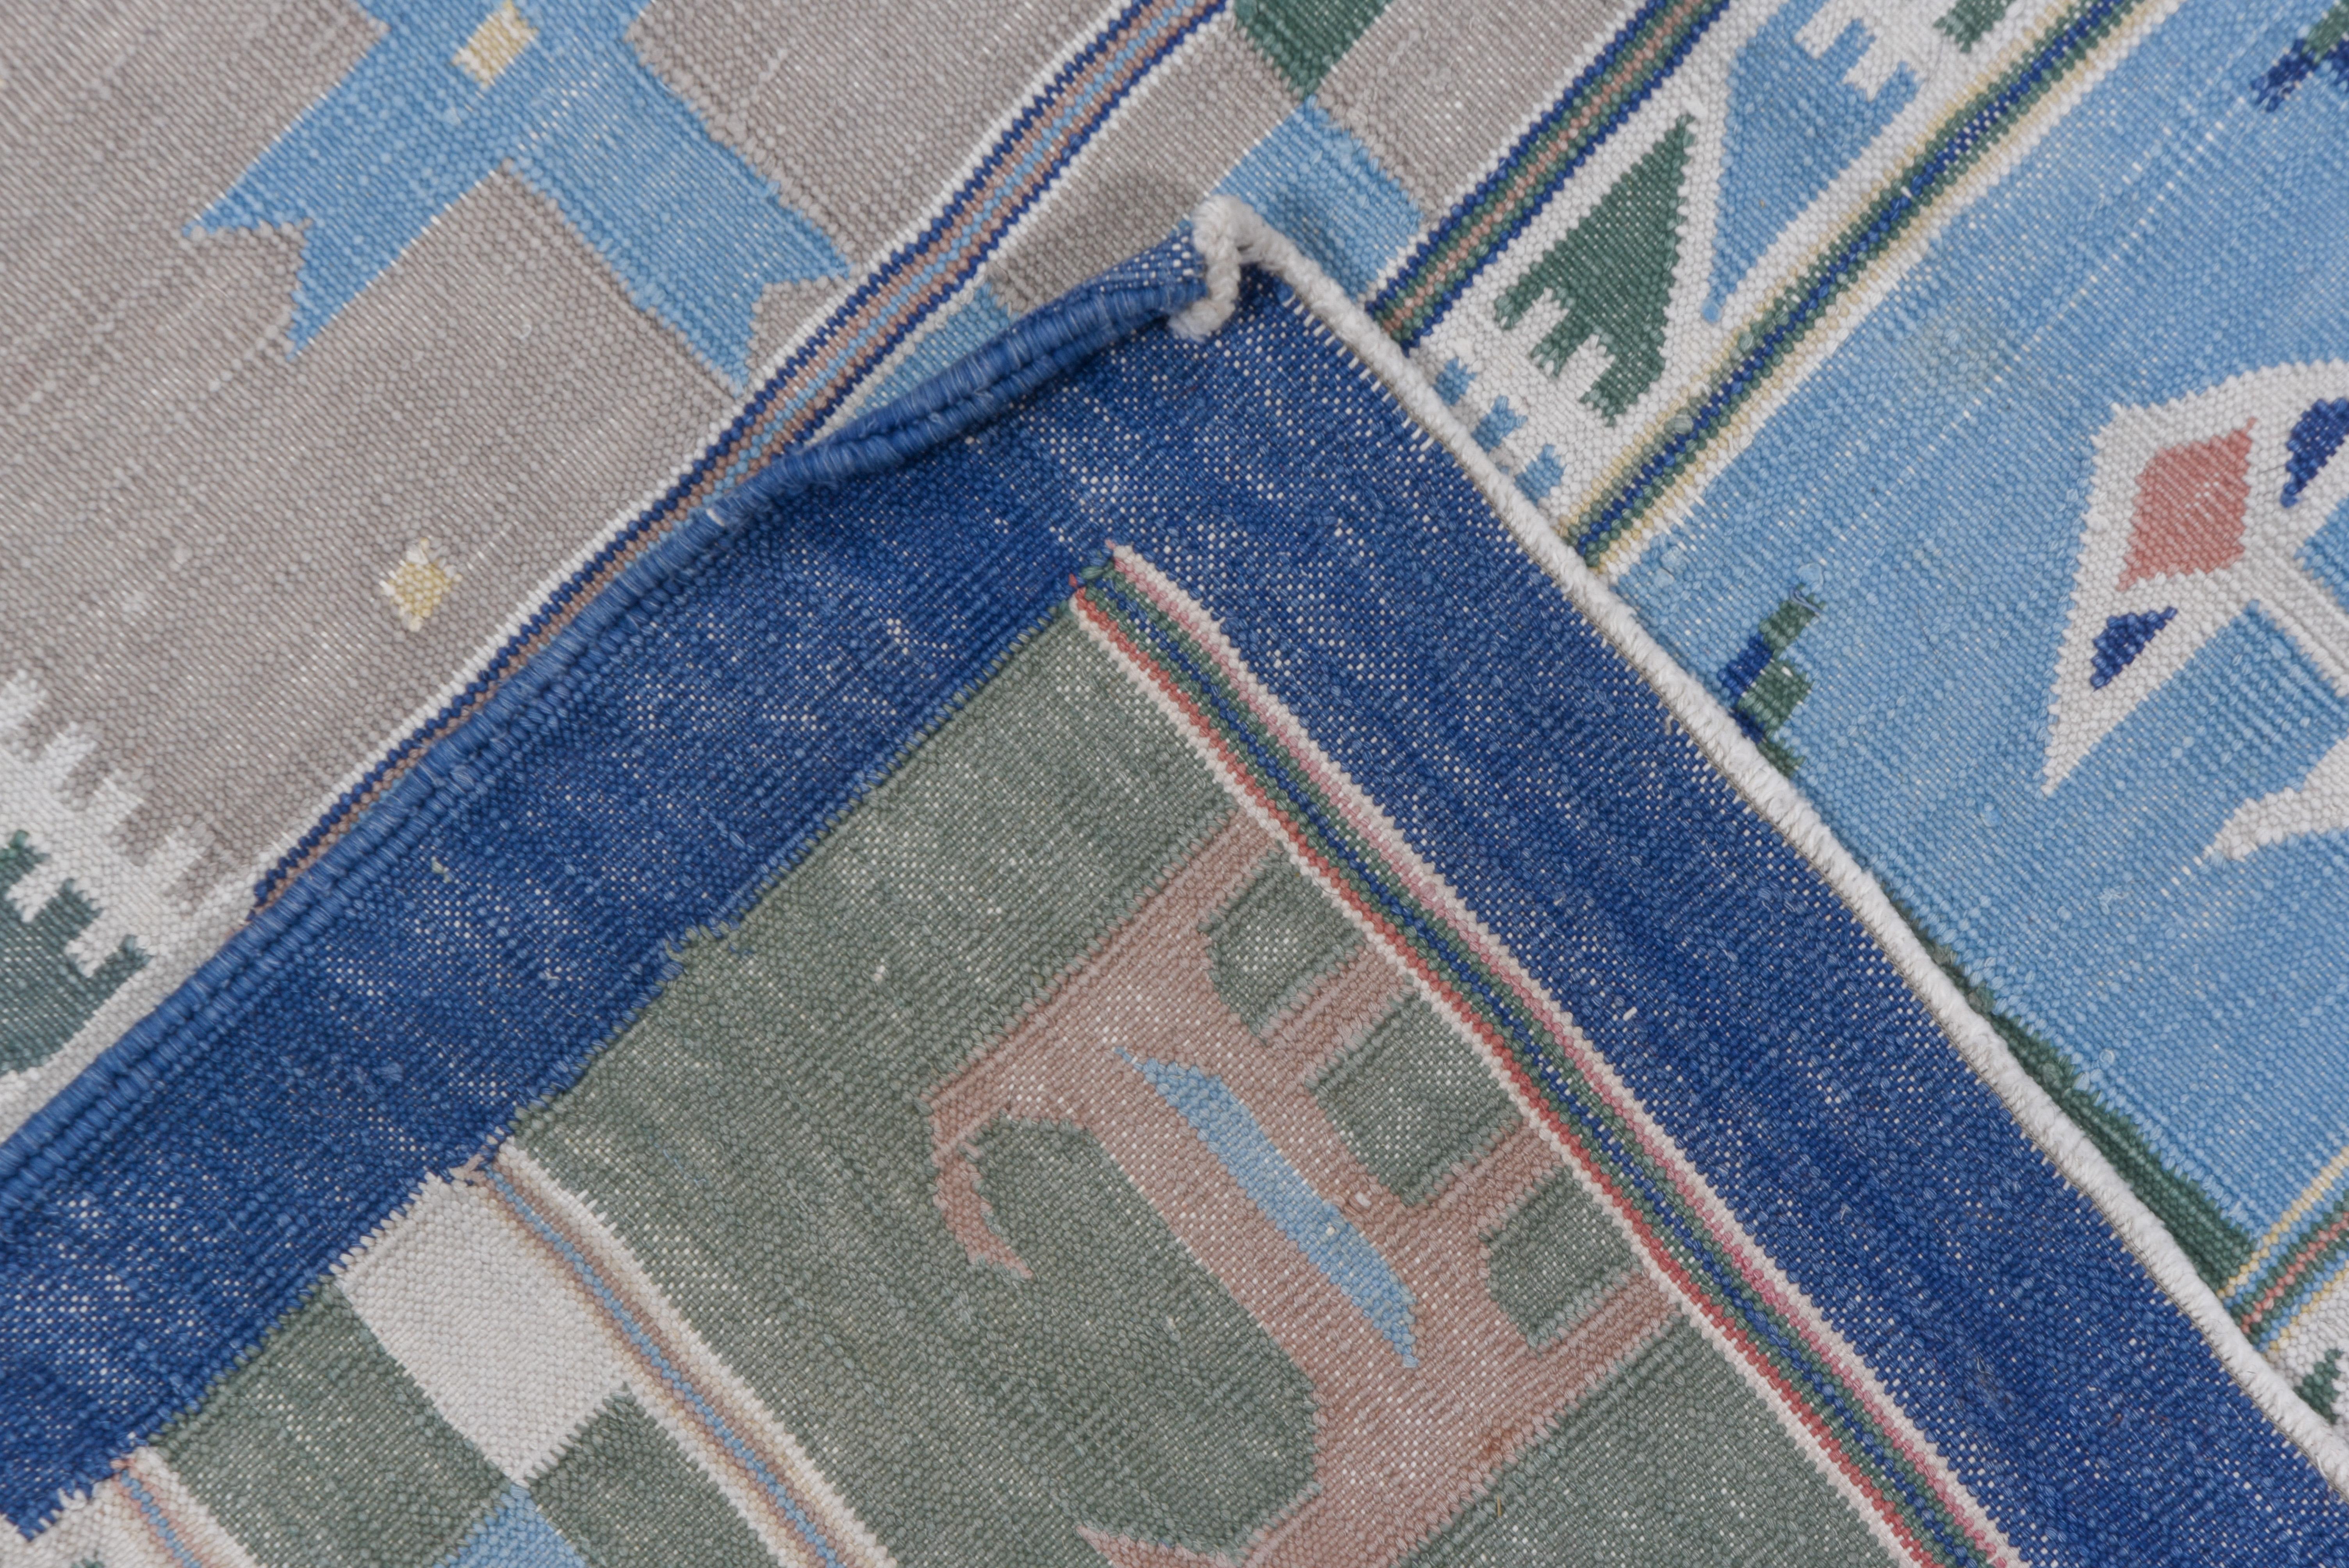 Das gemusterte Feld dieses Baumwoll-Flachgewebes zeigt horizontale Streifen mit stilisierten Vögeln, Chevrons, Kreuzen und breiten Zickzacklinien, meist in Blautönen. Blassblaue Hauptbordüre mit Tieren, Vögeln, Blumen und Kreuzen. Zusätzliche